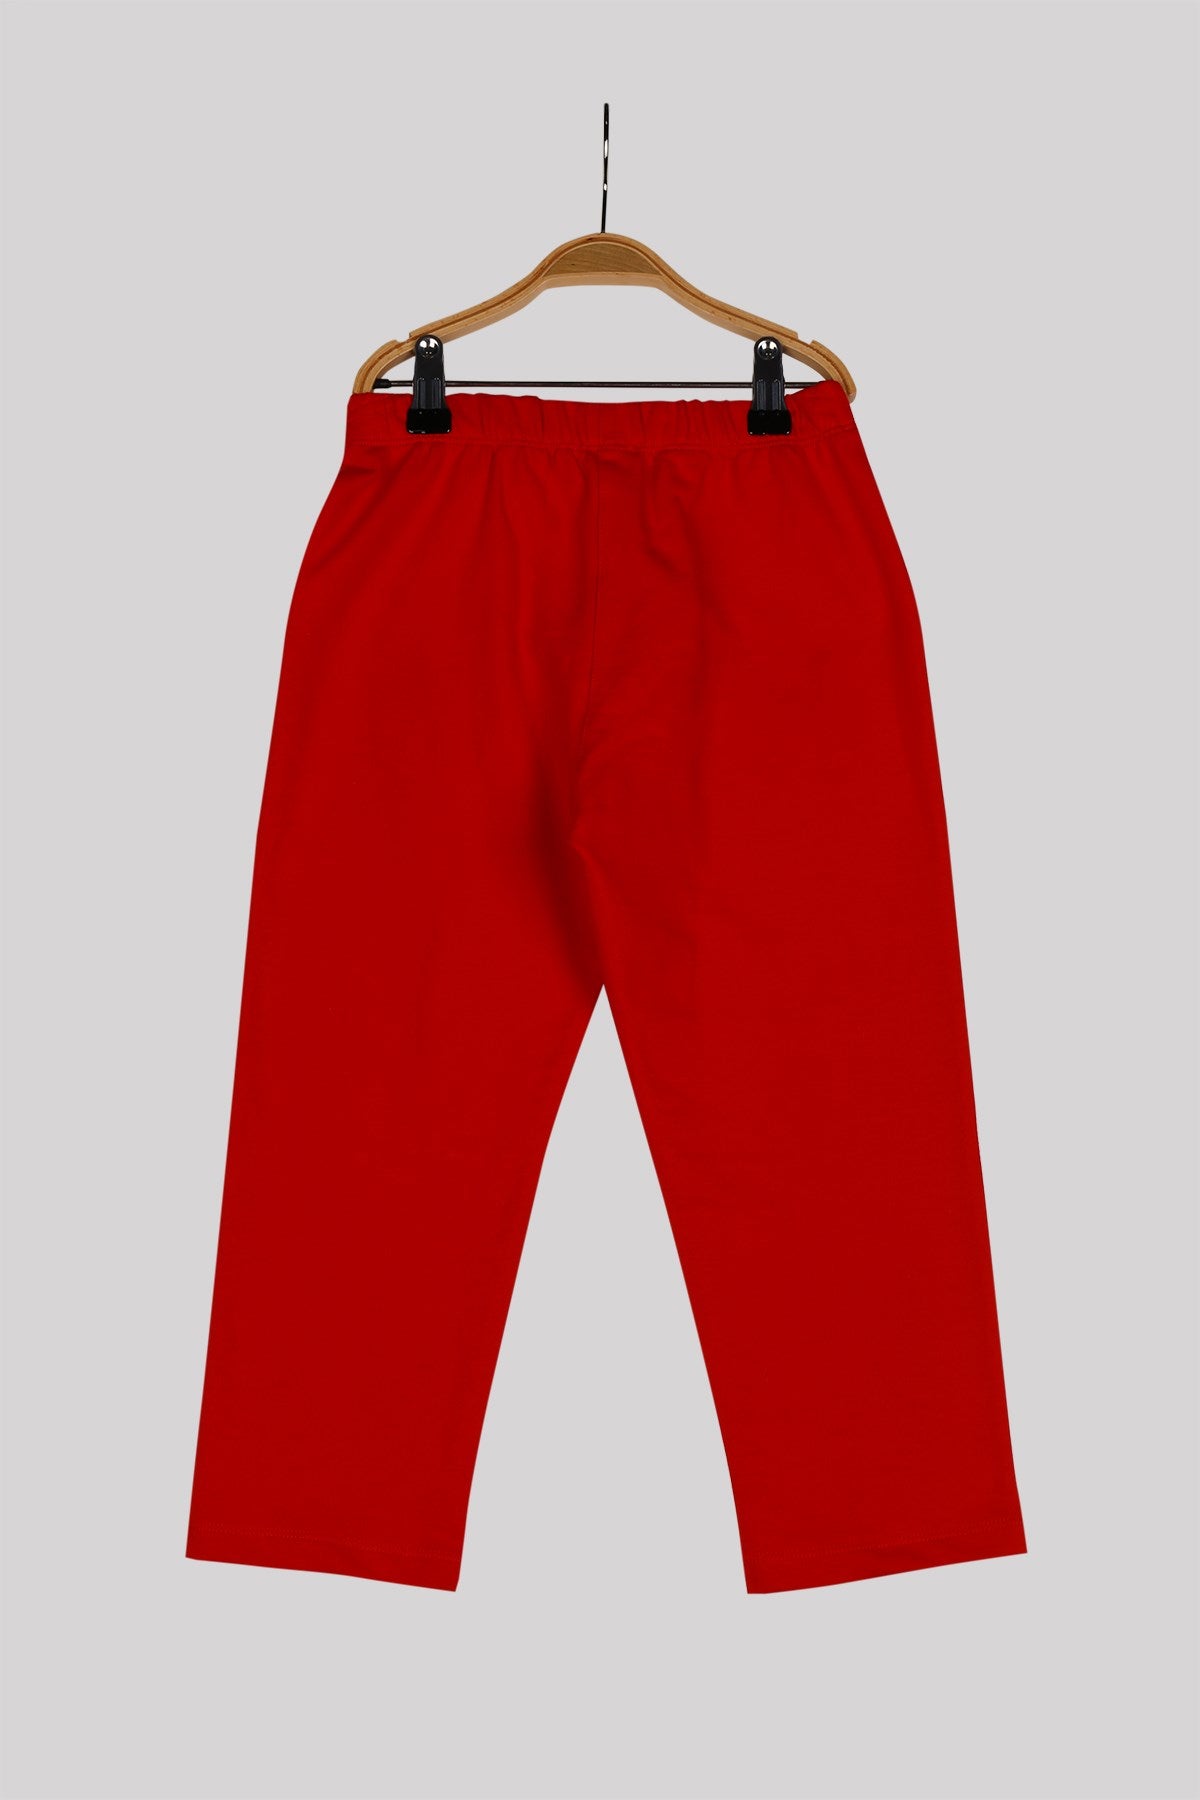 Unisex Çocuk Kırmızı Örme Pantolon (4-12yaş)-1